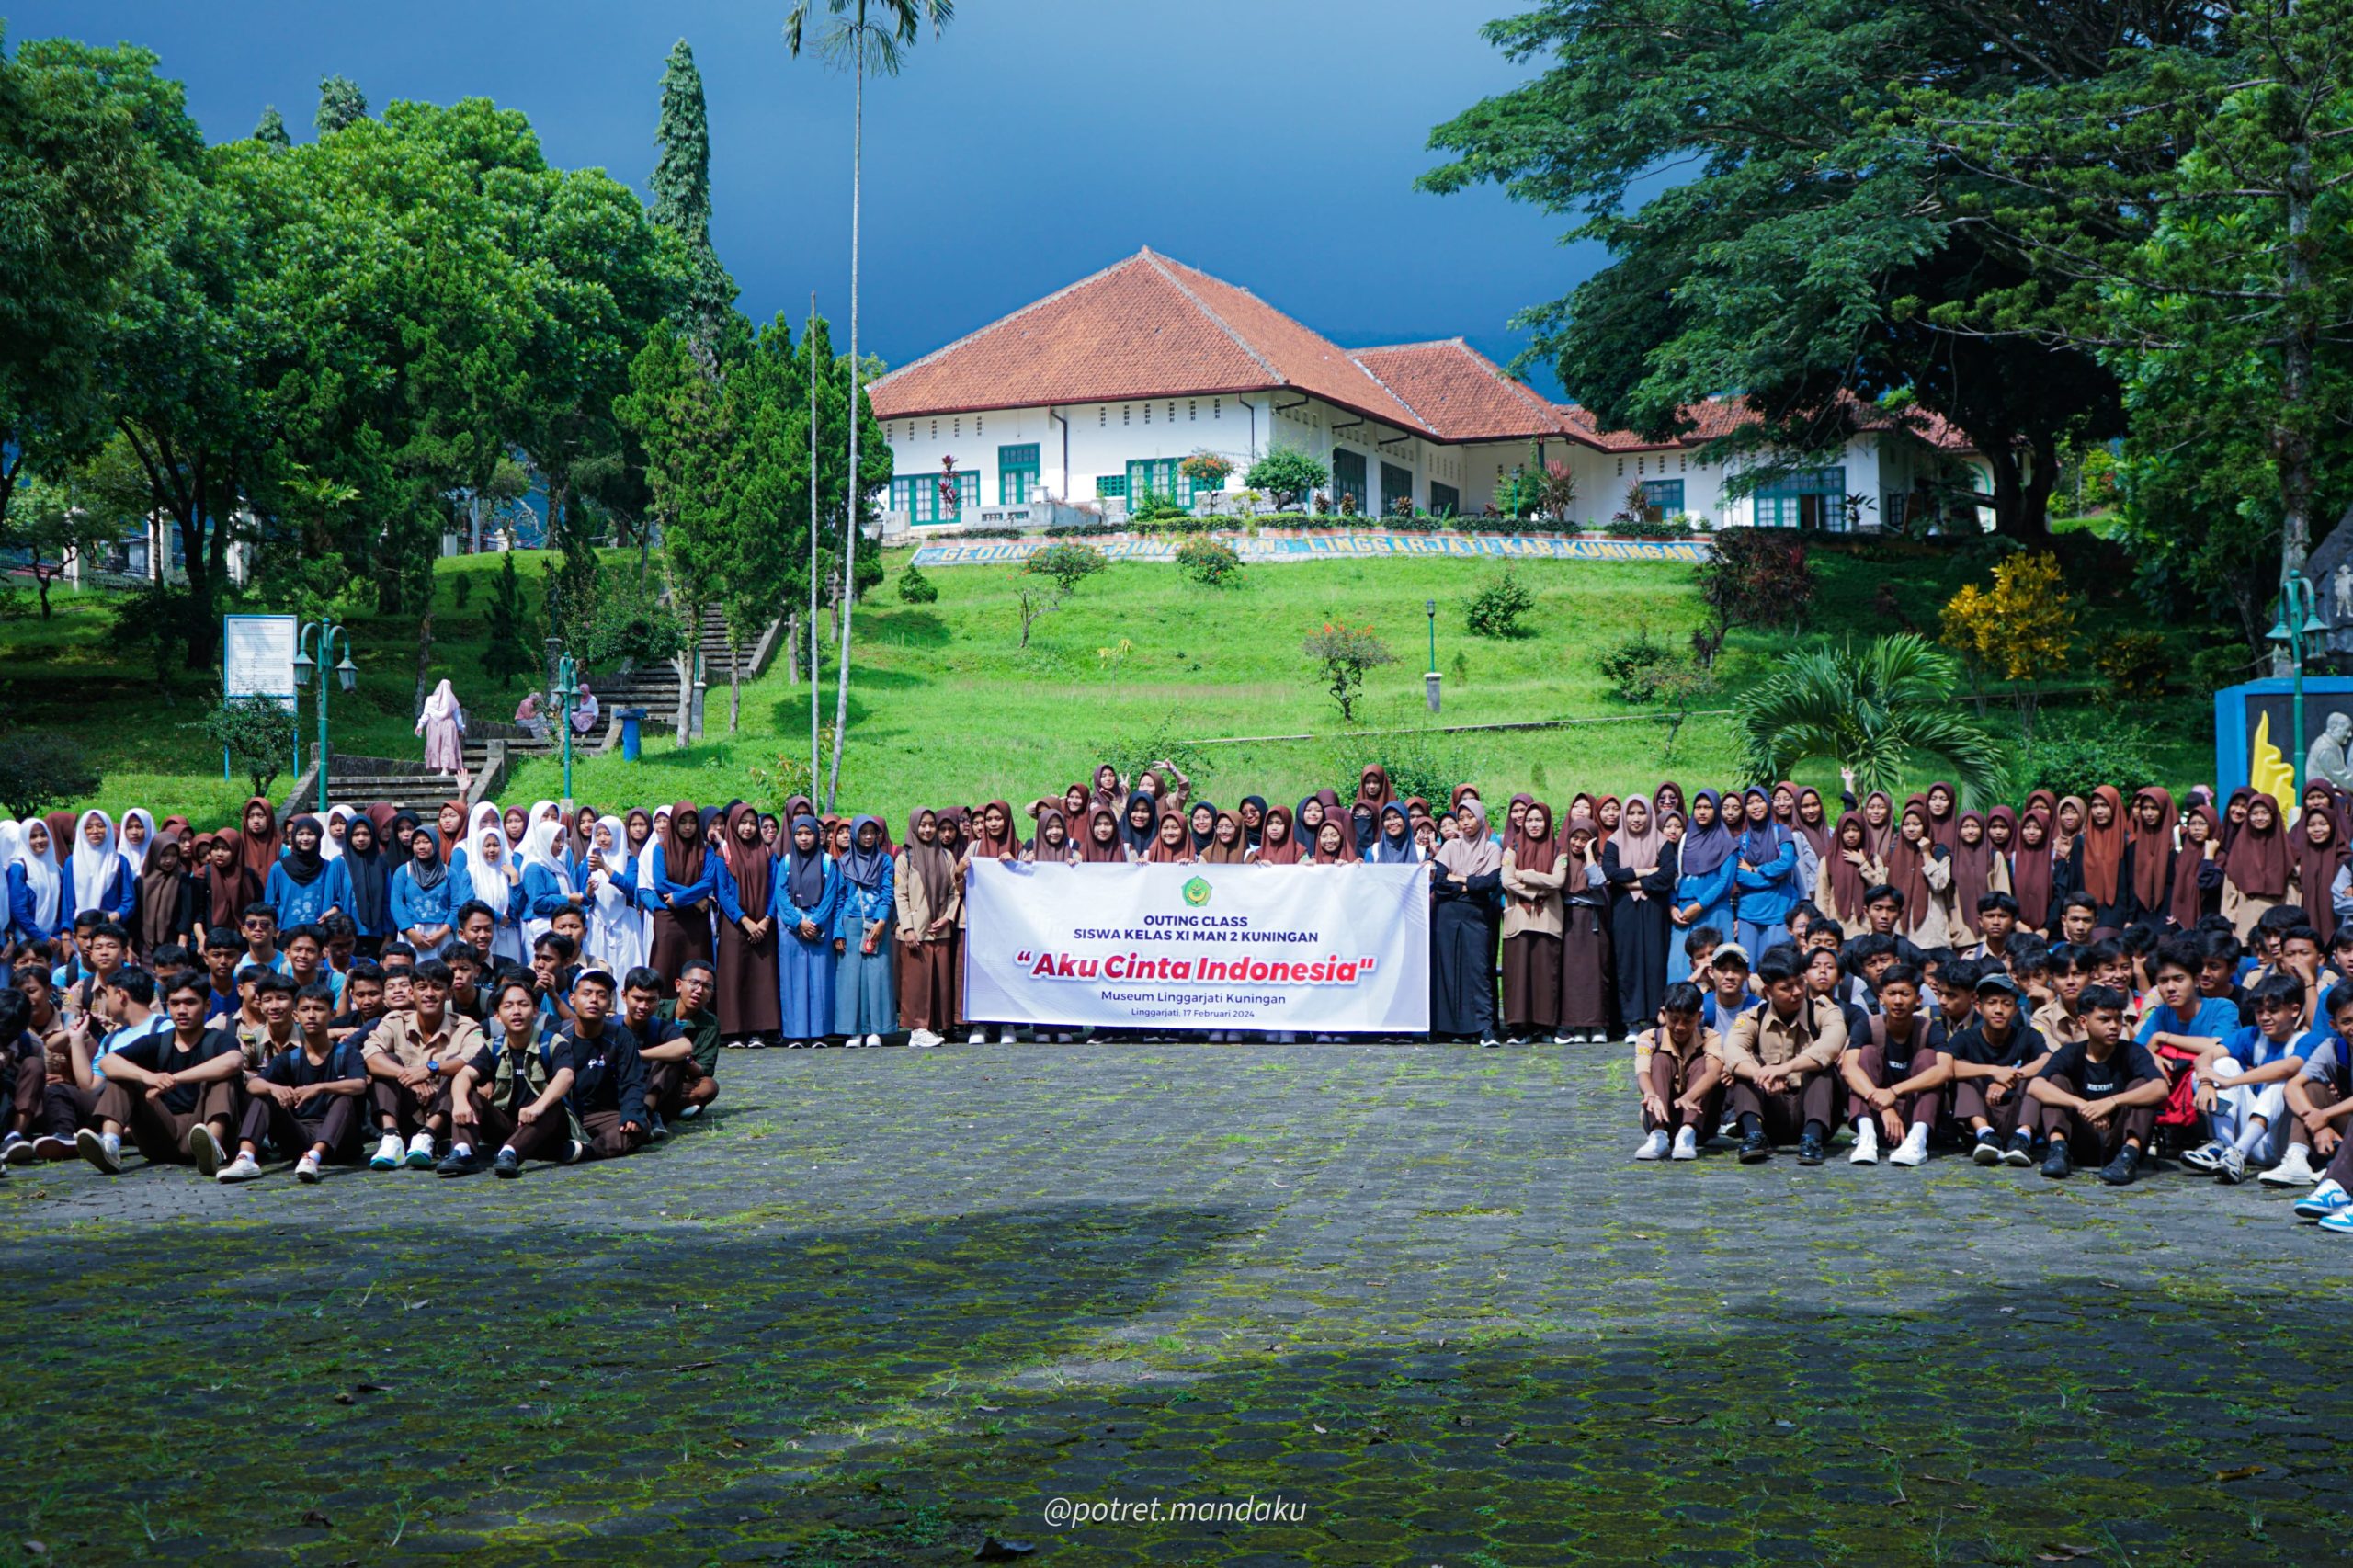 Read more about the article “Outing Class Penuh Inspirasi: Siswa MAN 2 Kuningan Kelas XI Menyuarakan ‘Aku Cinta Indonesia’ di Gedung Naskah Linggarjati”